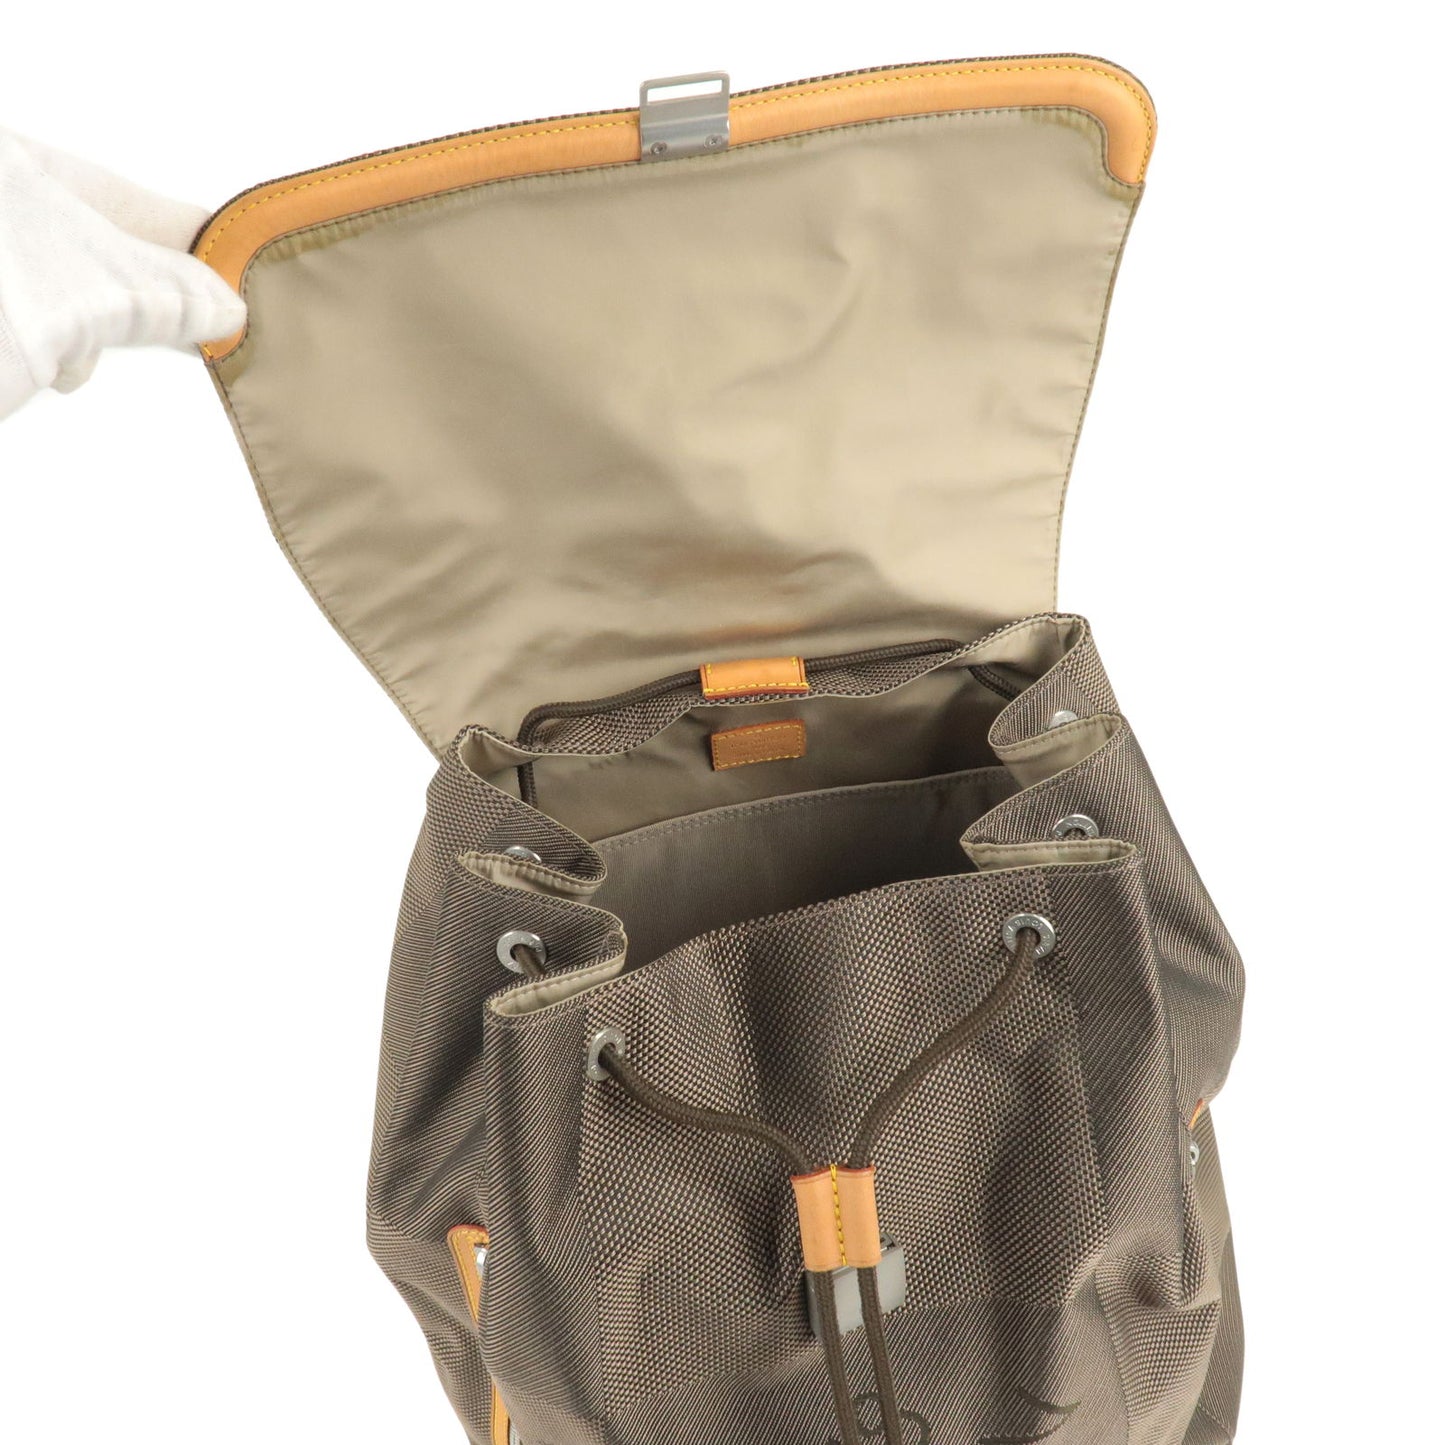 Louis Vuitton Damier Geant Pionie Back Pack M93055